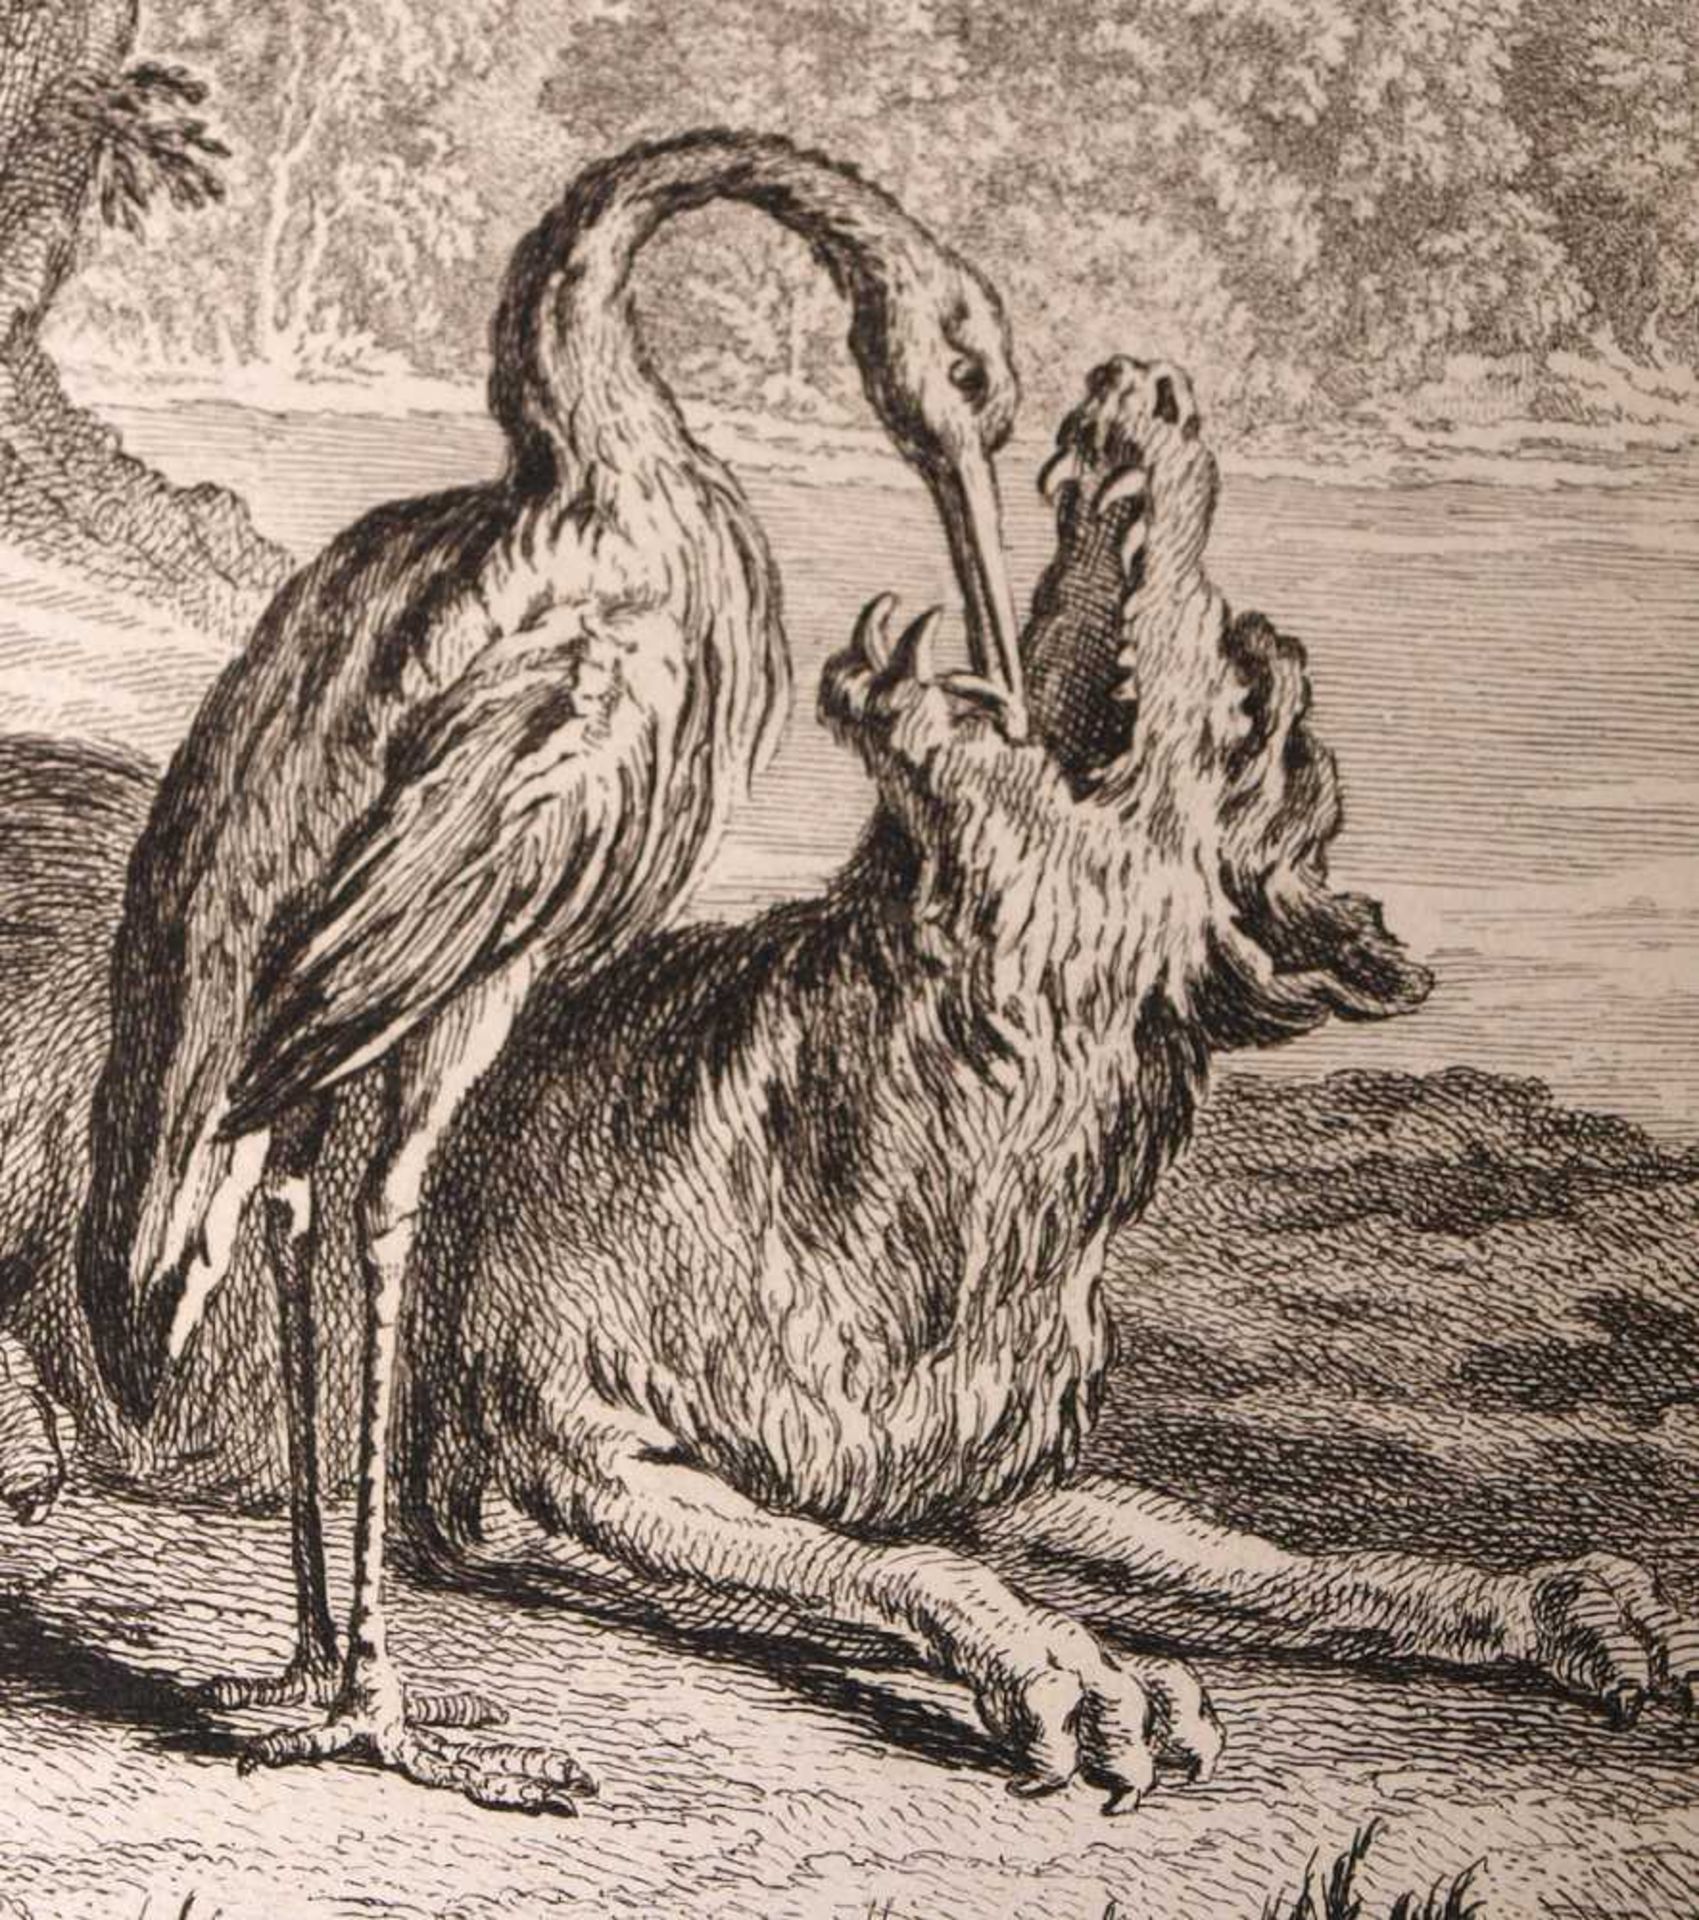 Kupferstich, 18./19.Jhdt.Illustration zur Fabel "Der Wolf und der Storch". Blattgröße 39x26,5cm. - Bild 2 aus 2